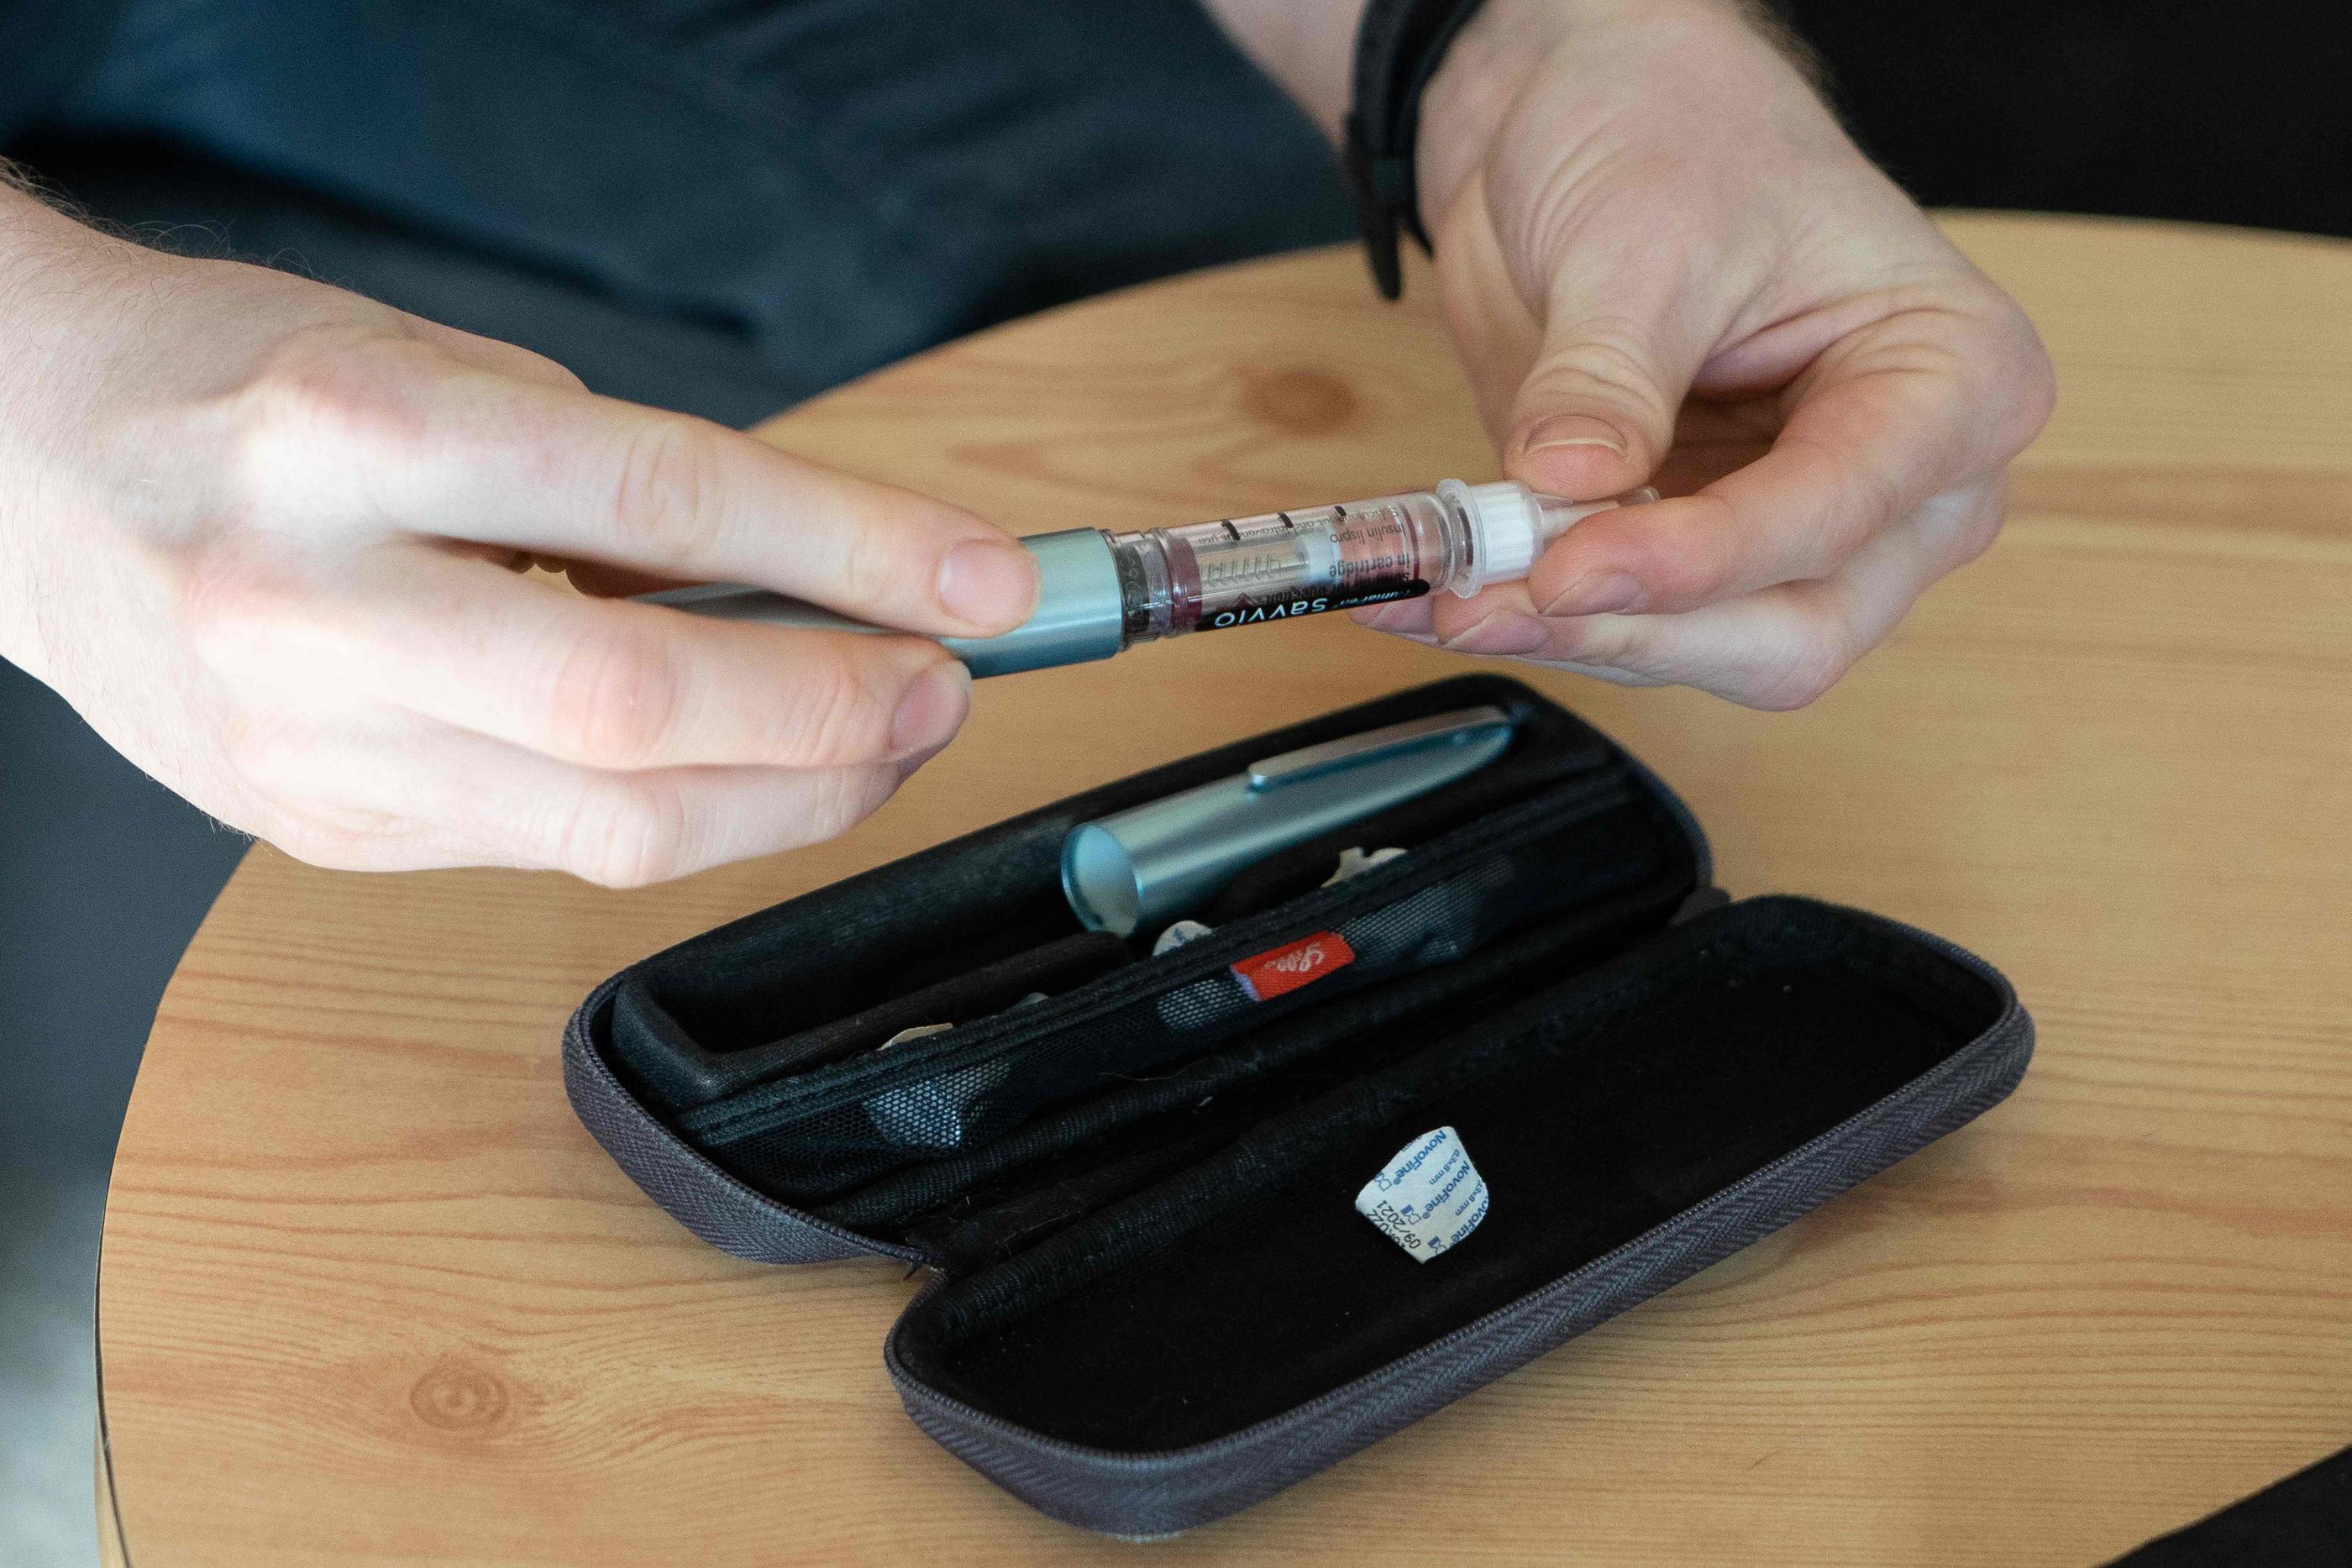 Médecins sans frontières demande notamment la baisse du prix des stylos à insuline. (Illustration) AFP/Halle'n